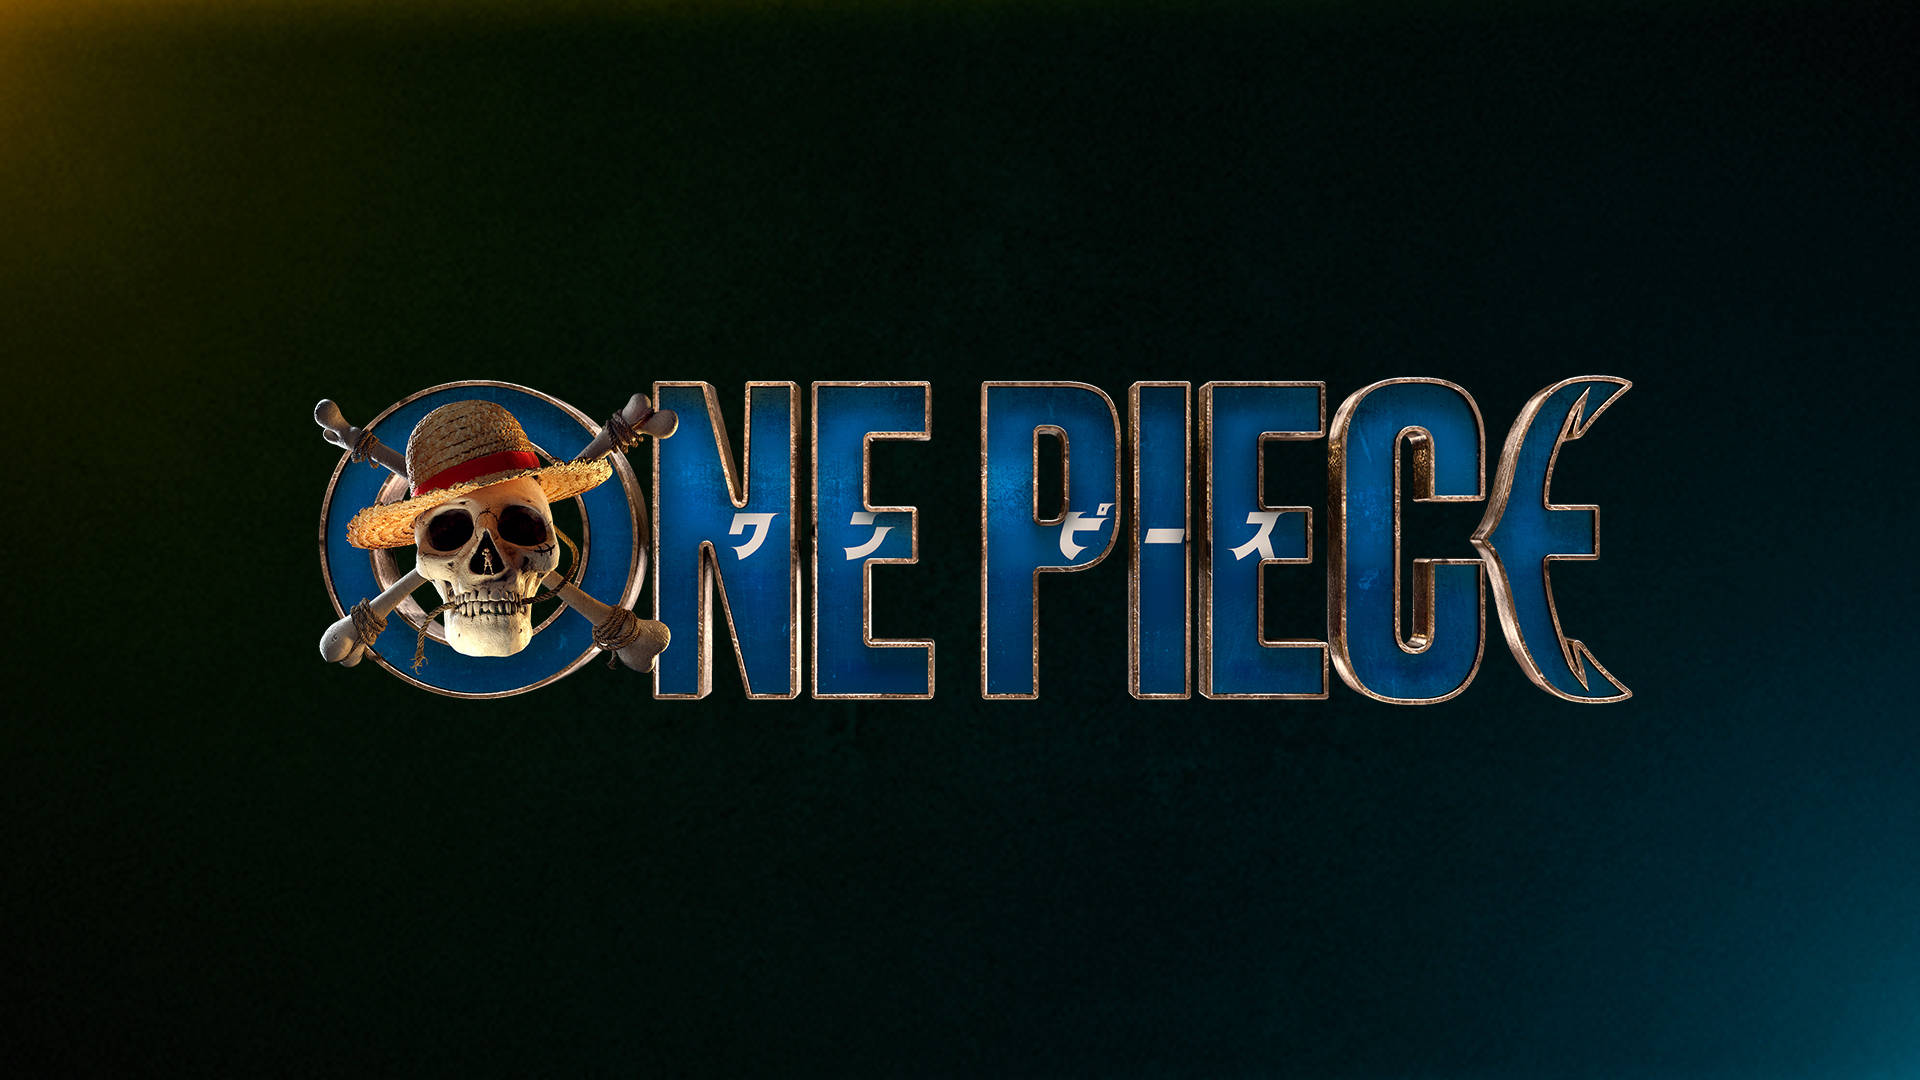 Nền 4k One Piece - Bạn có muốn tận hưởng những hình ảnh cực nét, chi tiết với độ phân giải 4k của One Piece? Với những nền 4k One Piece này, bạn sẽ có cơ hội tận hưởng toàn bộ các chi tiết và tông màu đậm chất truyện tranh của One Piece.